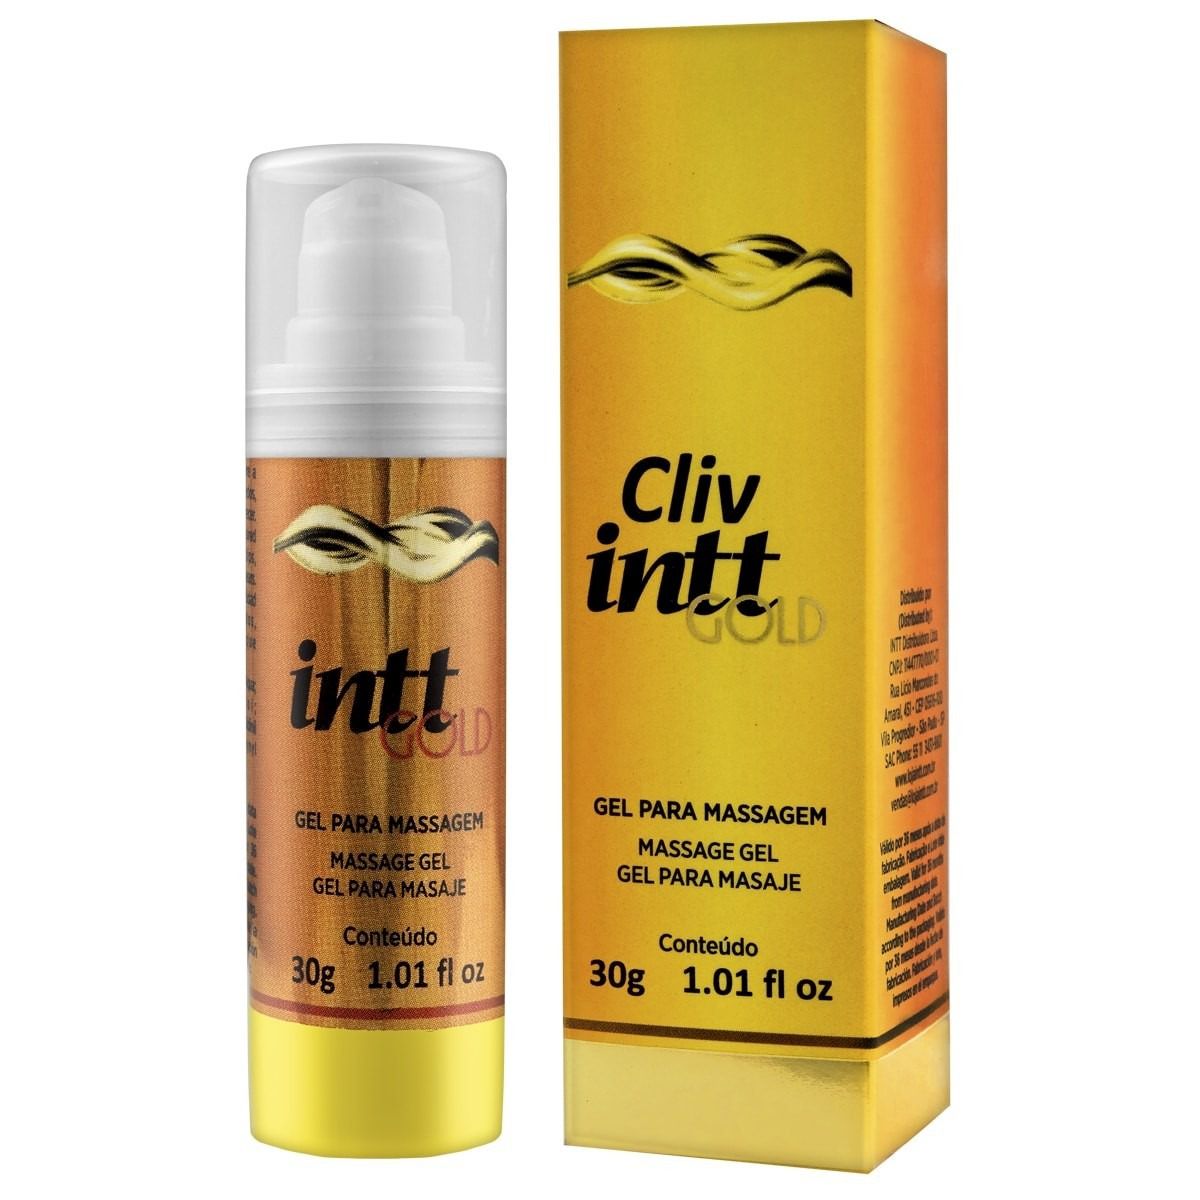 Cliv Intt Gold - Dessensibilizante Facilitador - INTT